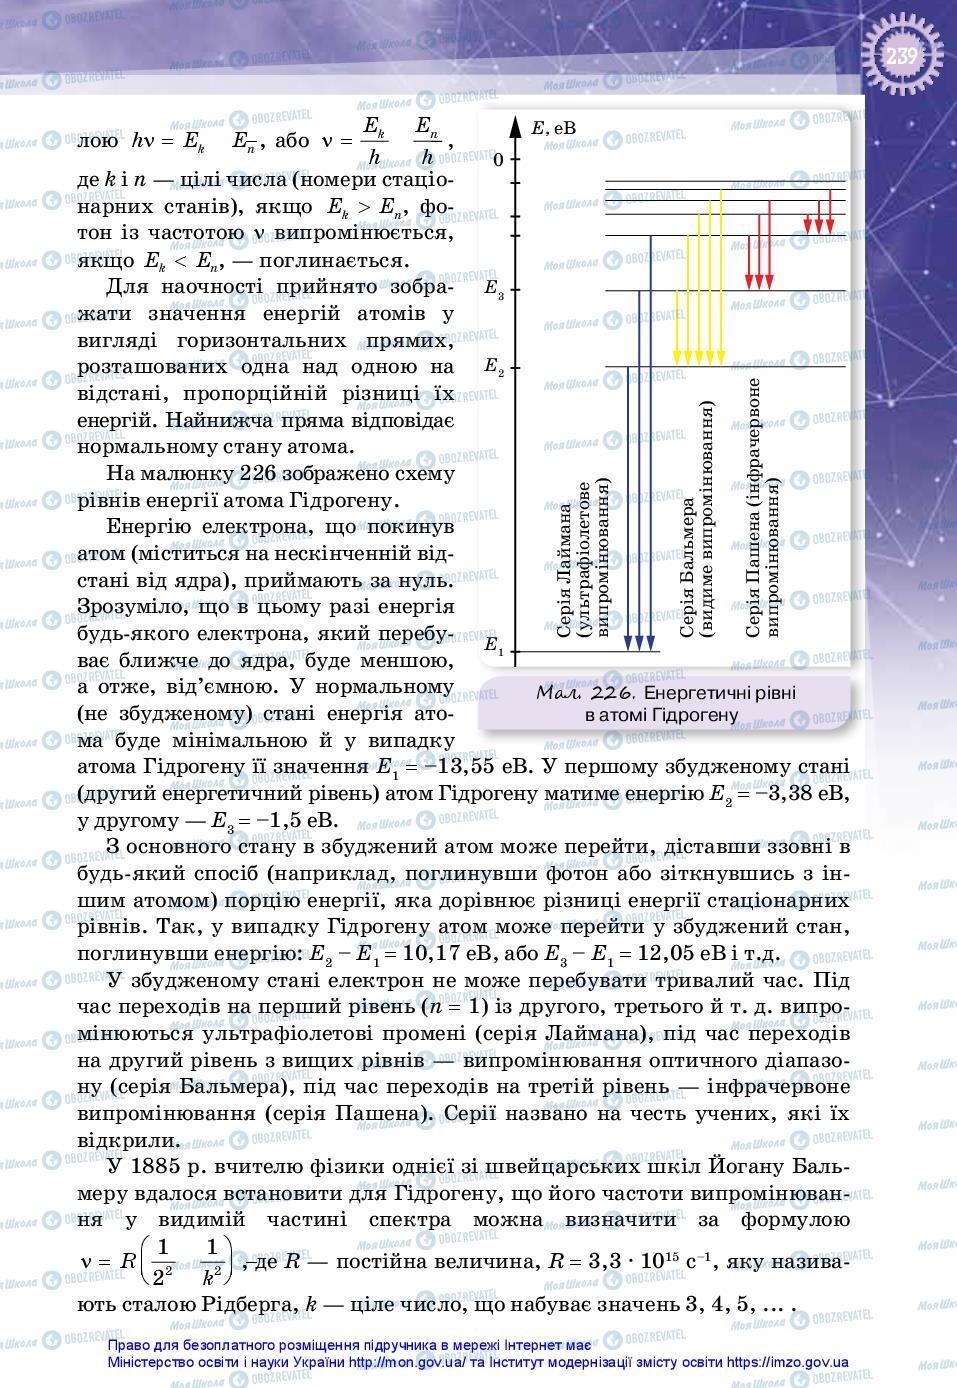 Учебники Физика 11 класс страница 239